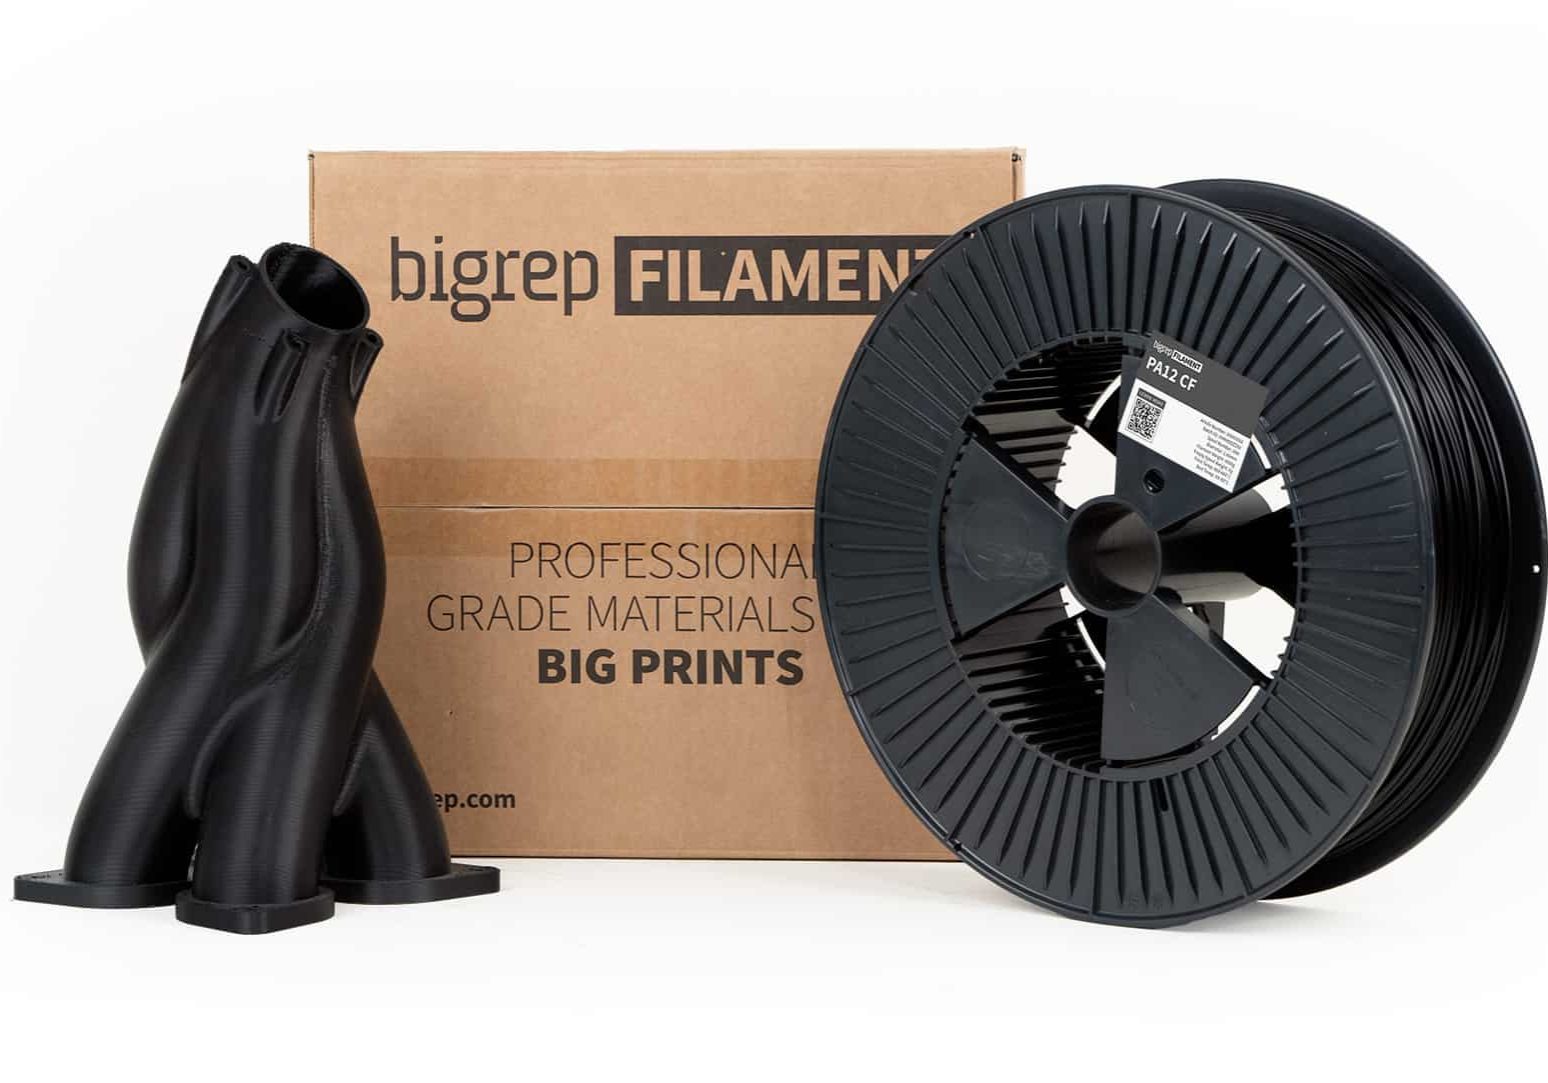 BigRep PA12 CF filament spool and sample print